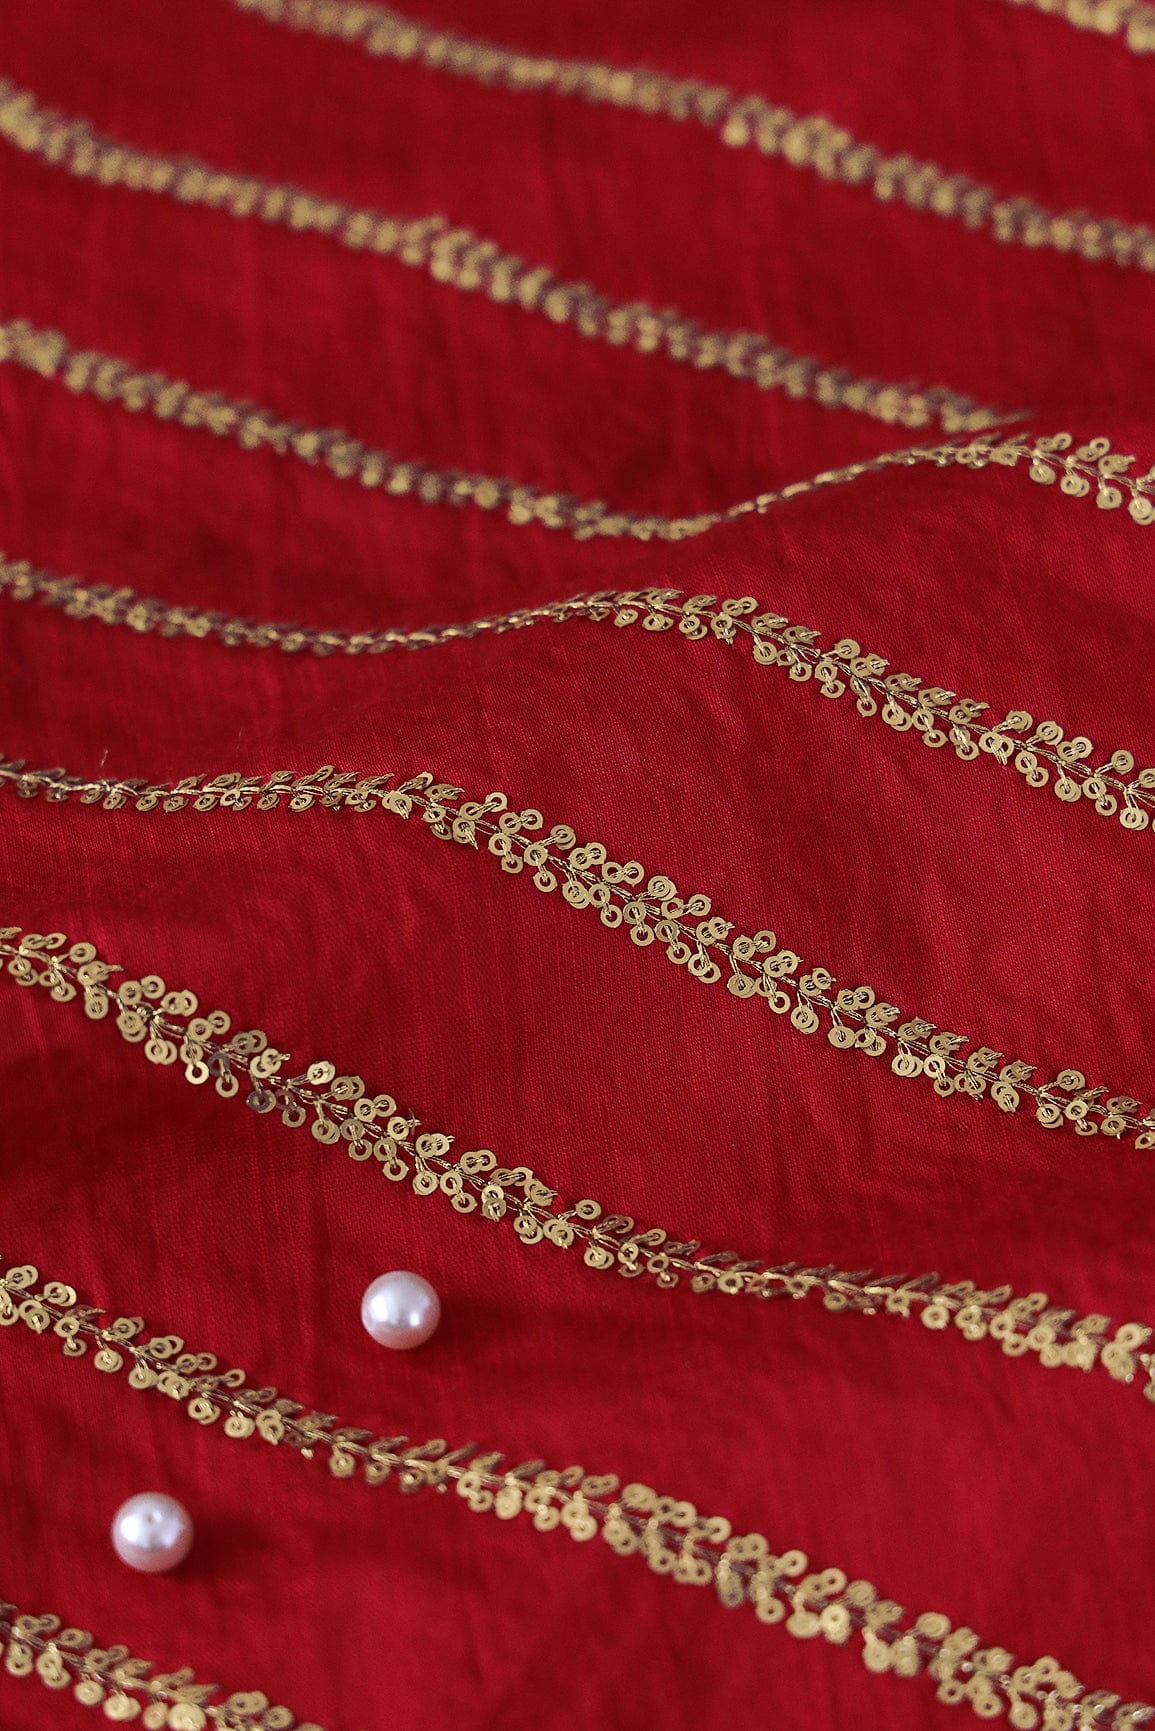 doeraa LEHENGA SET Red And Olive Unstitched Lehenga Set Fabric (3 Piece)